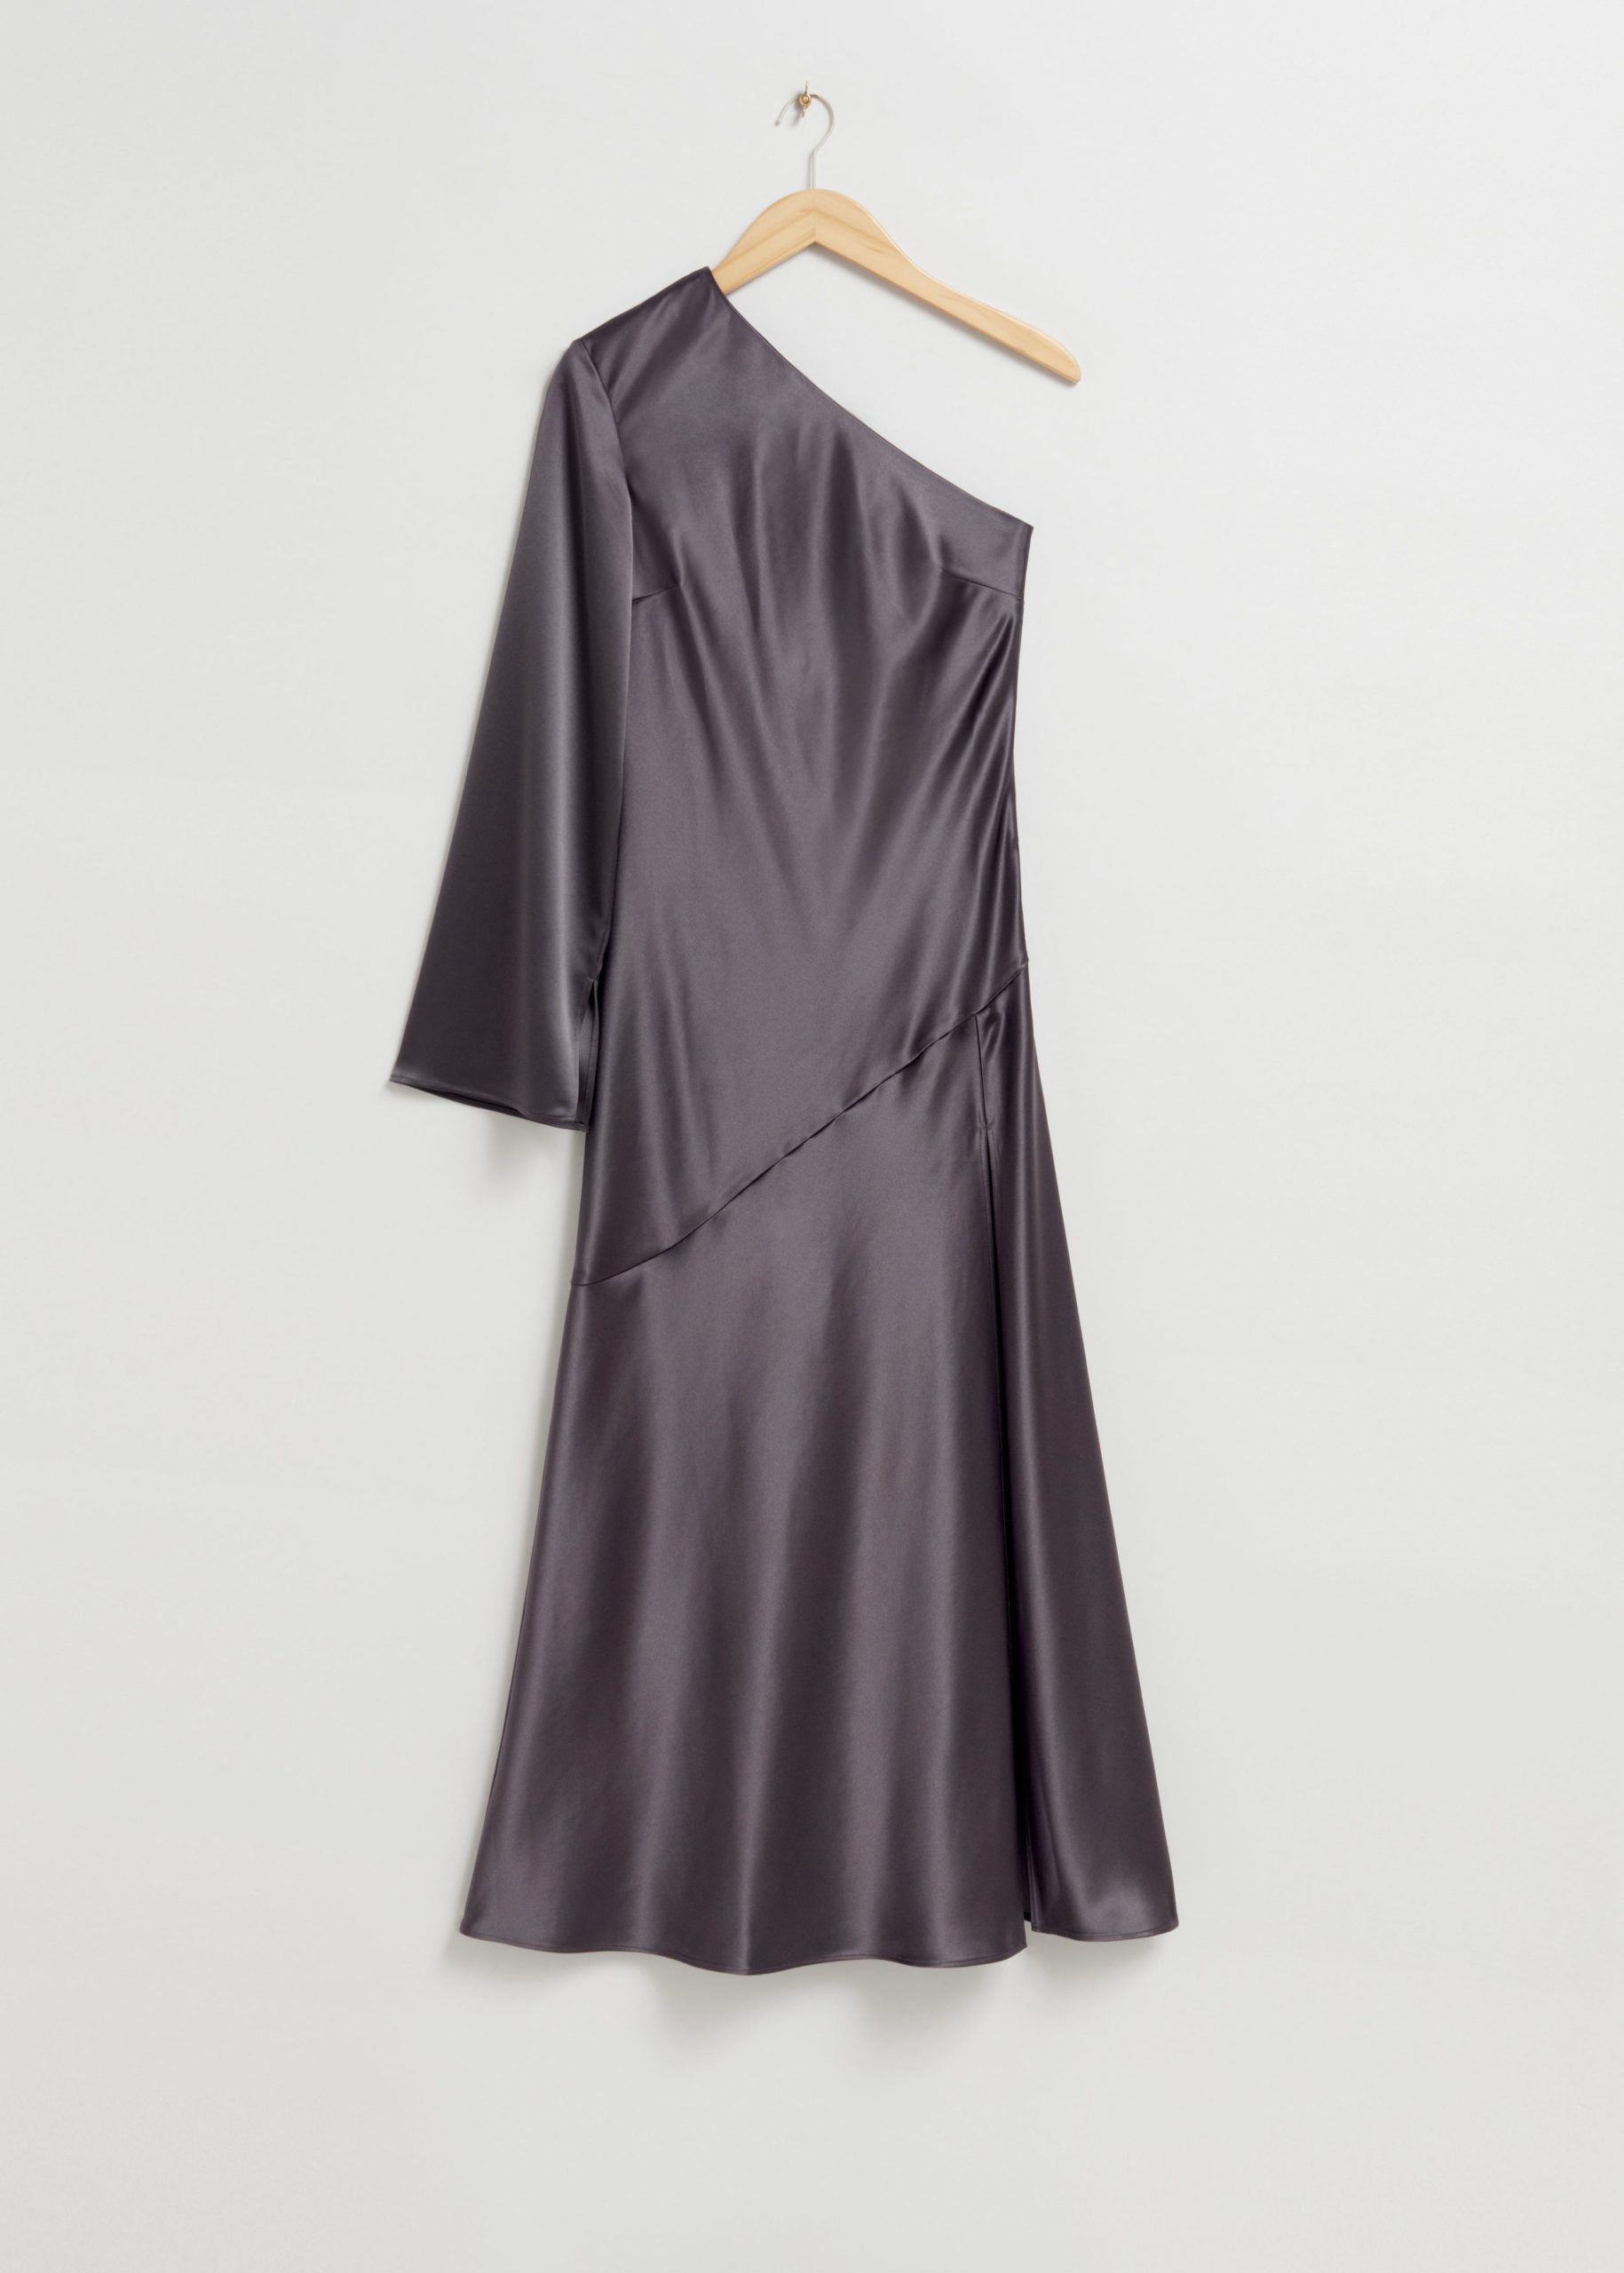 & Other Stories Asymmetrisches schulterfreies Kleid Dunkelviolett, Party kleider in Größe 38. Farbe: Dark purple